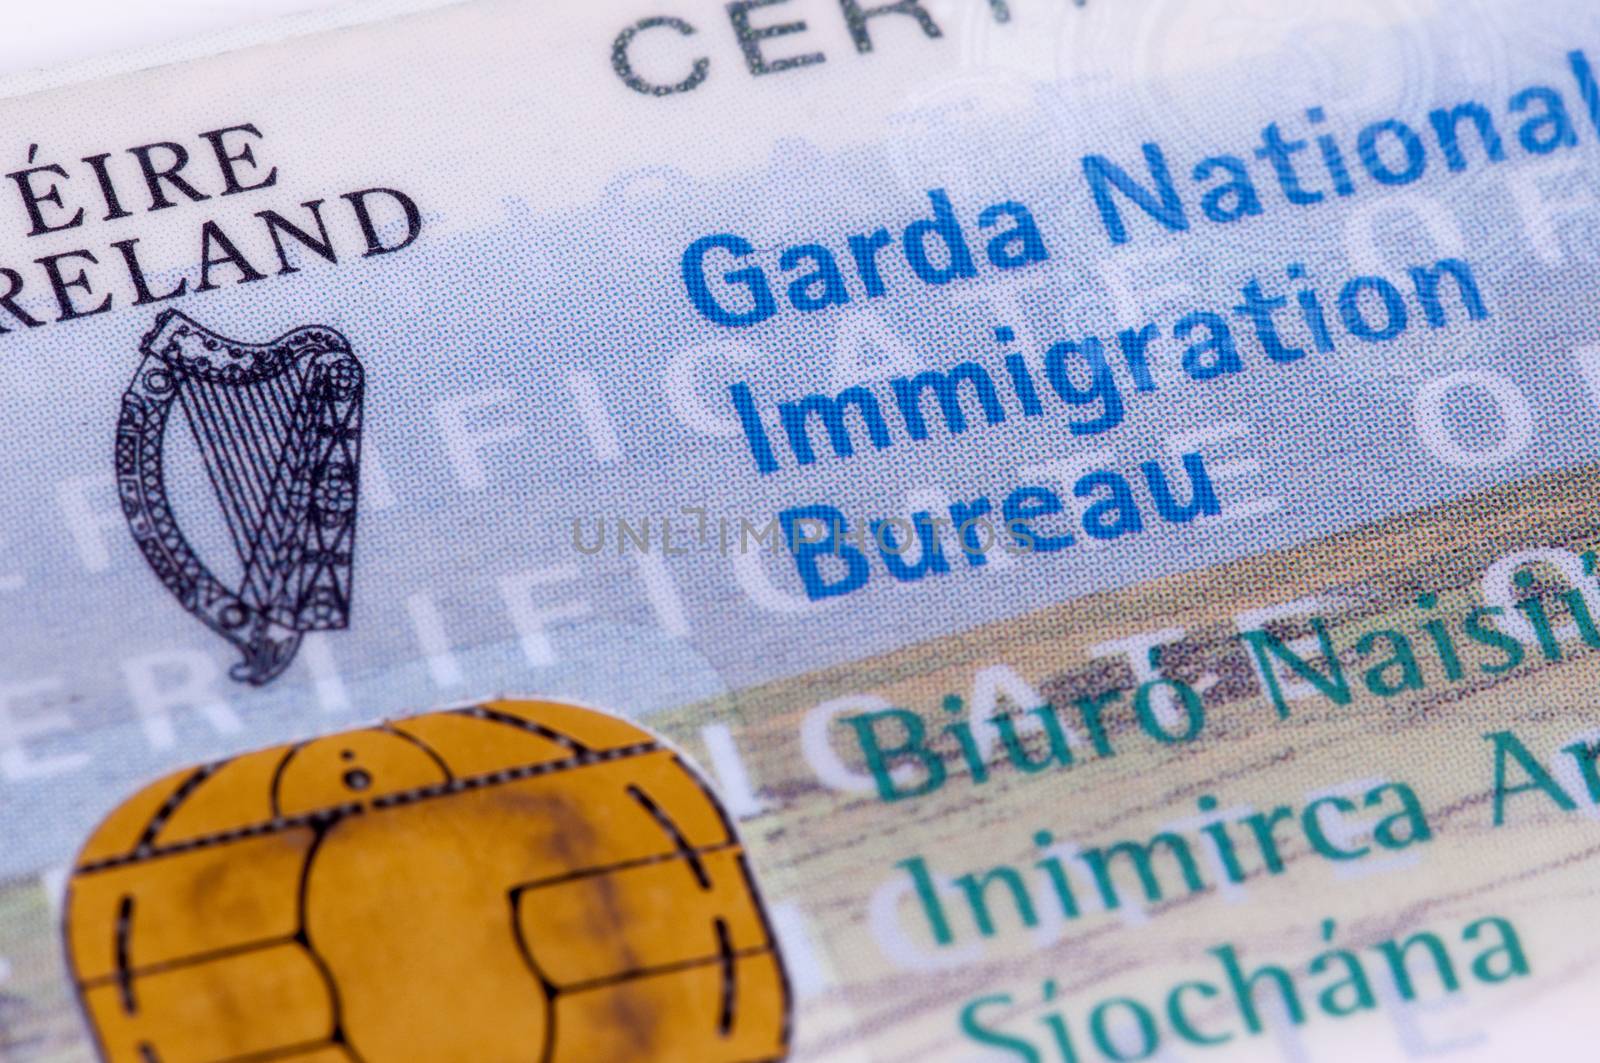 Garda National Immigration Bureau / GNIB / Irish Visa